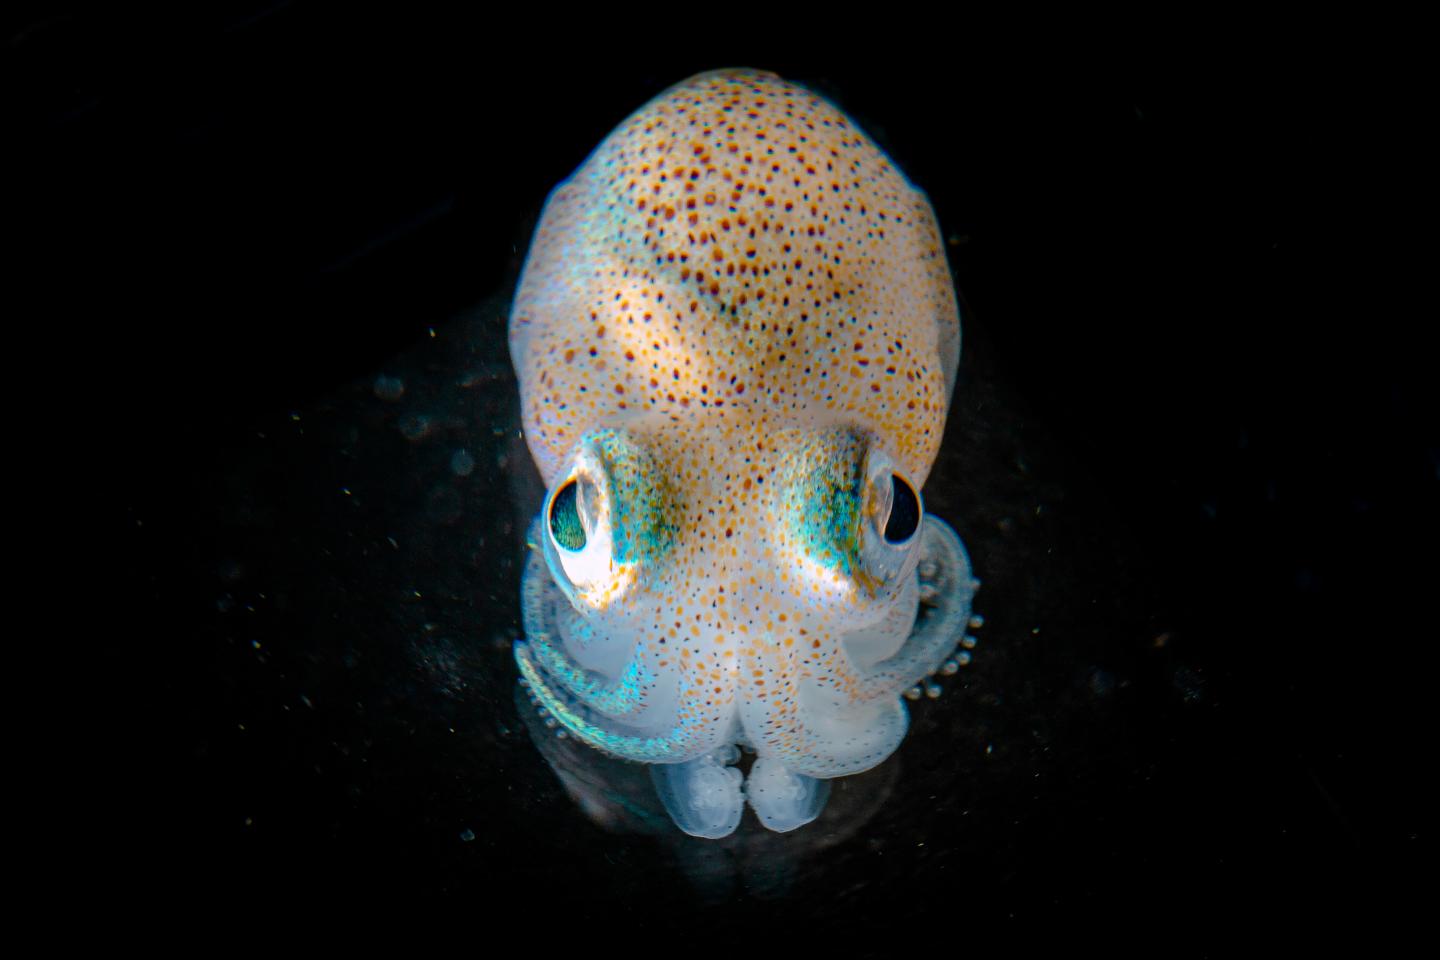 Hawaiian Bobtail Squid